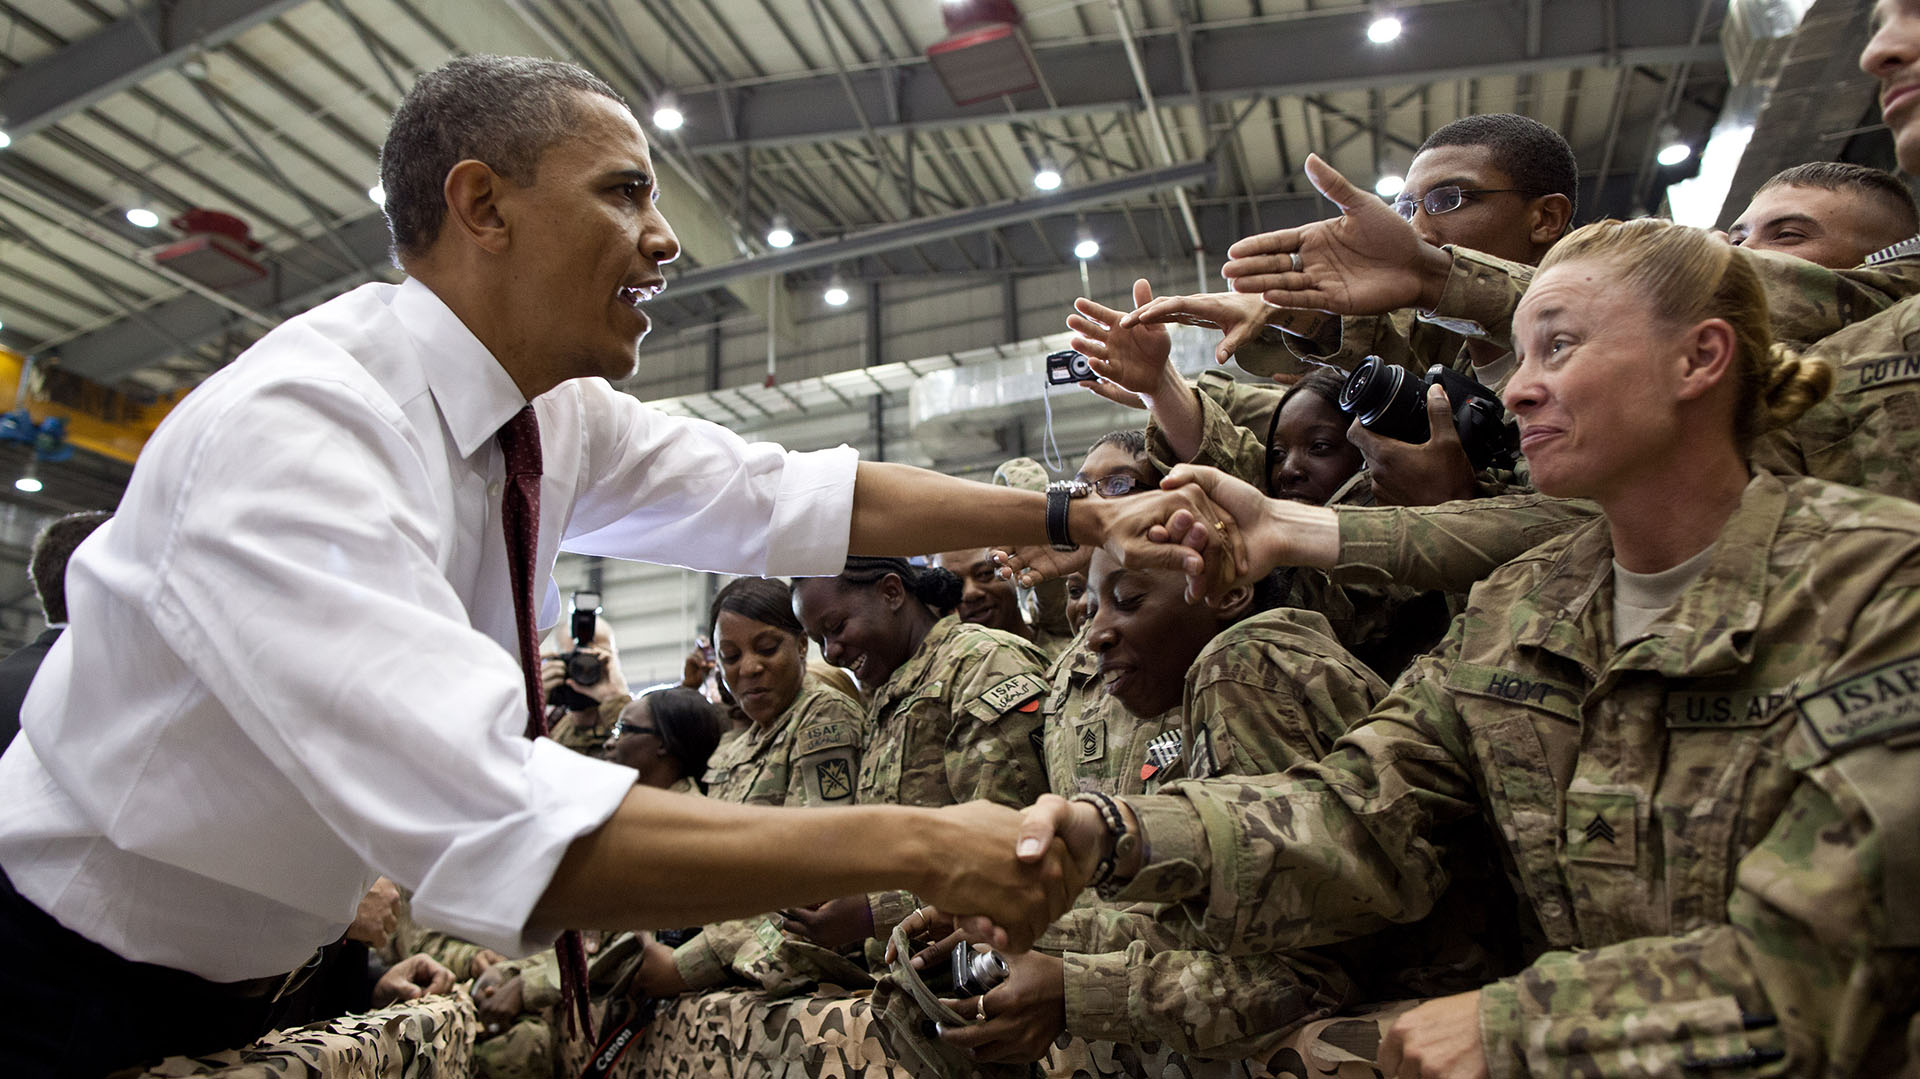 El presidente Barack Obama saluda a las tropas estadounidenses tras sus comentarios en el aeródromo de Bagram, Afganistán, el 1 de mayo de 2012. (Foto oficial de la Casa Blanca por Pete Souza)